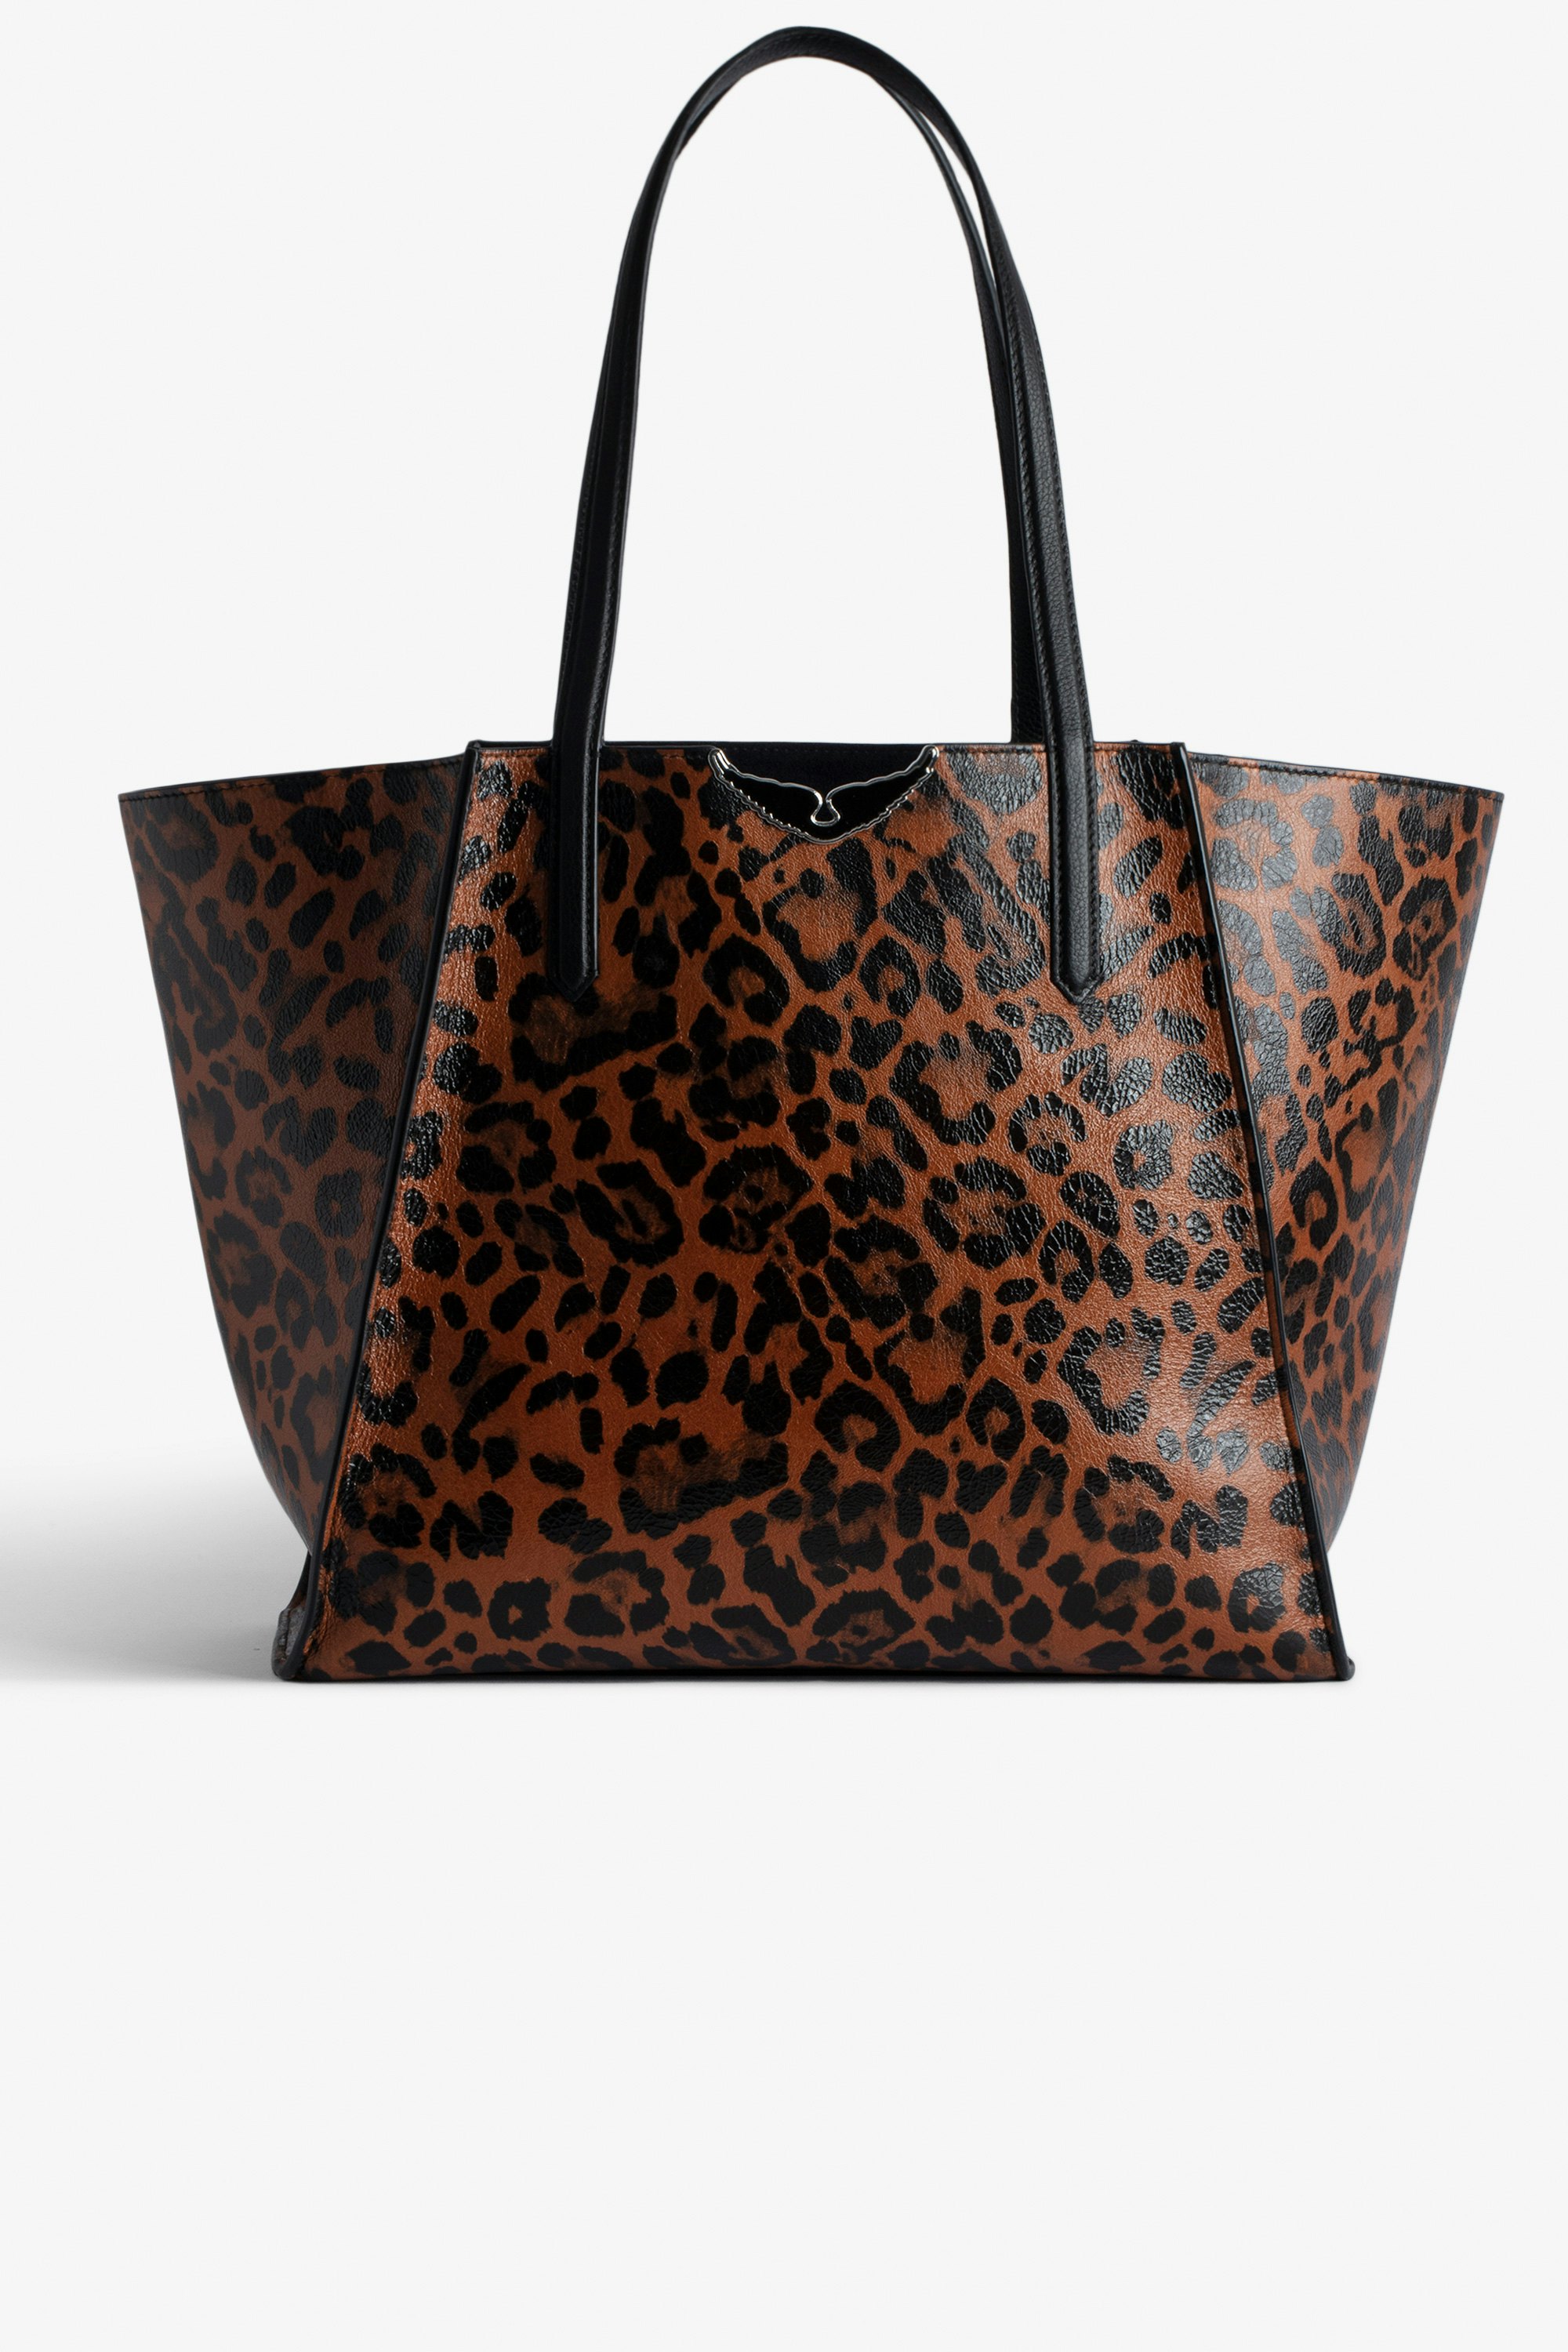 Tasche Le Borderline Leopard Wendbare Tasche aus braunem glänzendem Leder mit Leoparden-Print und Henkel und Flügeln aus Metall für Damen.